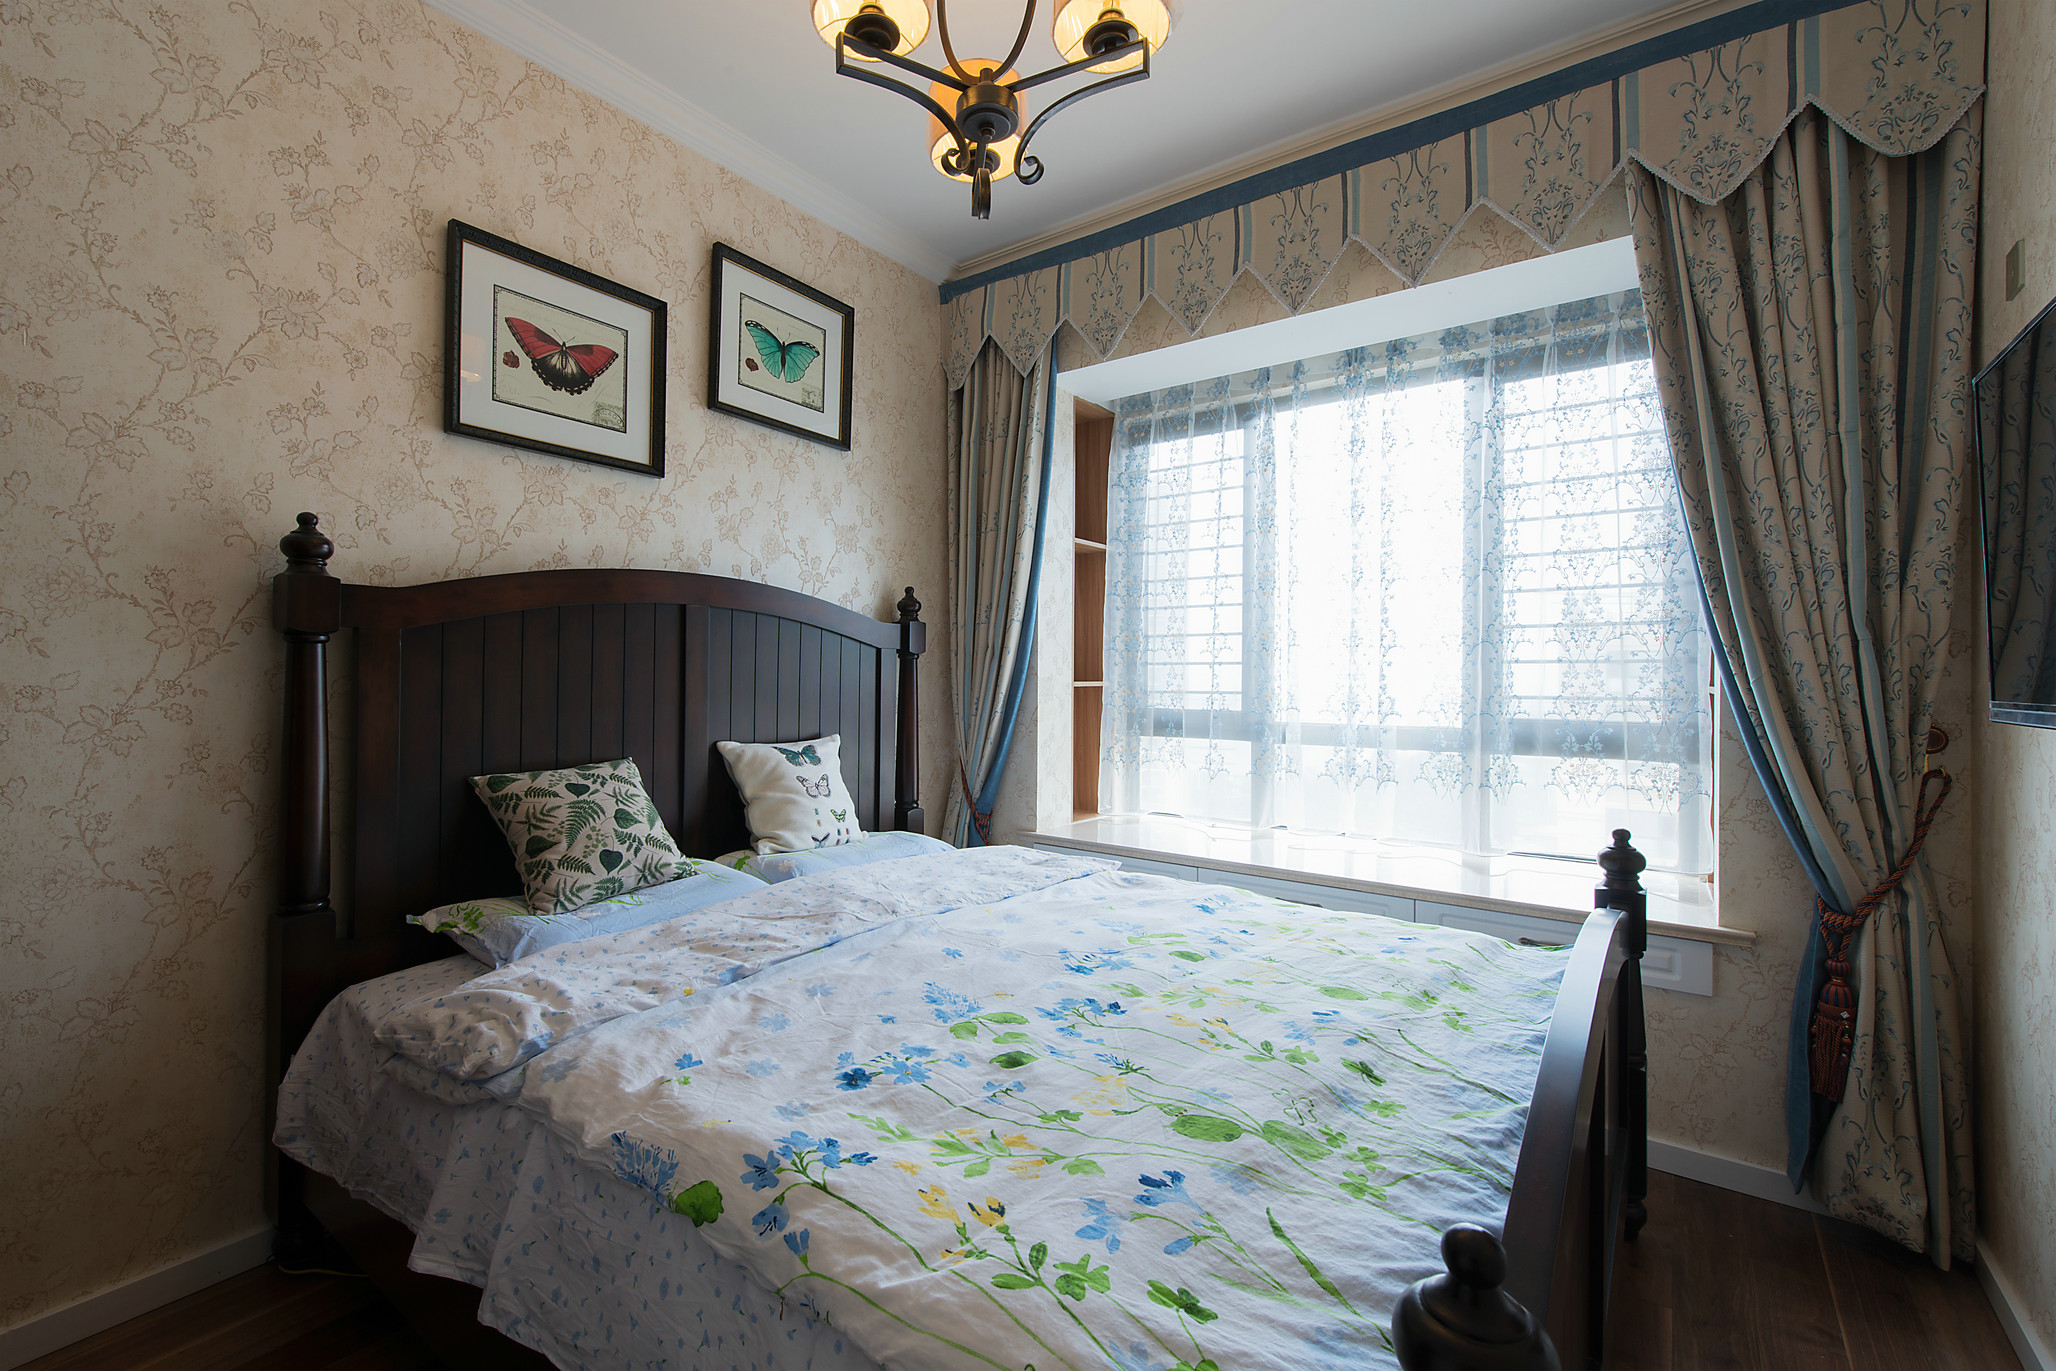 次卧沿用碎花式壁纸，配以木质双人床，给予业主安适惬意的生活体验。